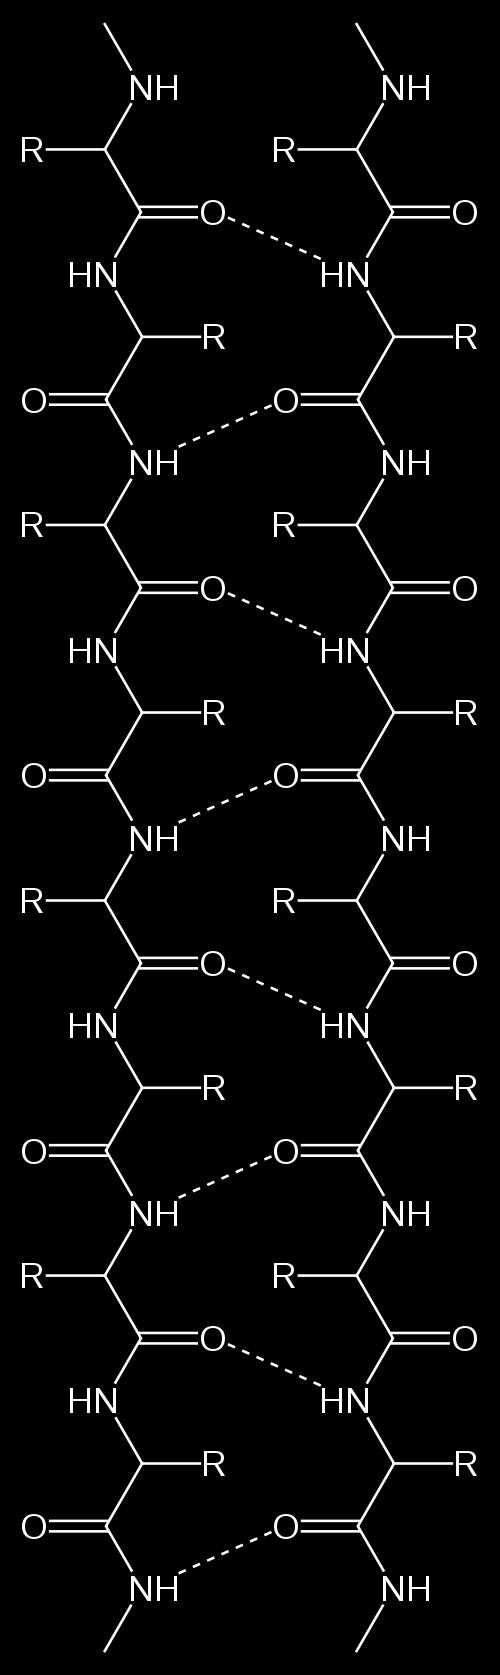 3 β-sheets So-called β-sheets consist of β-strands that are